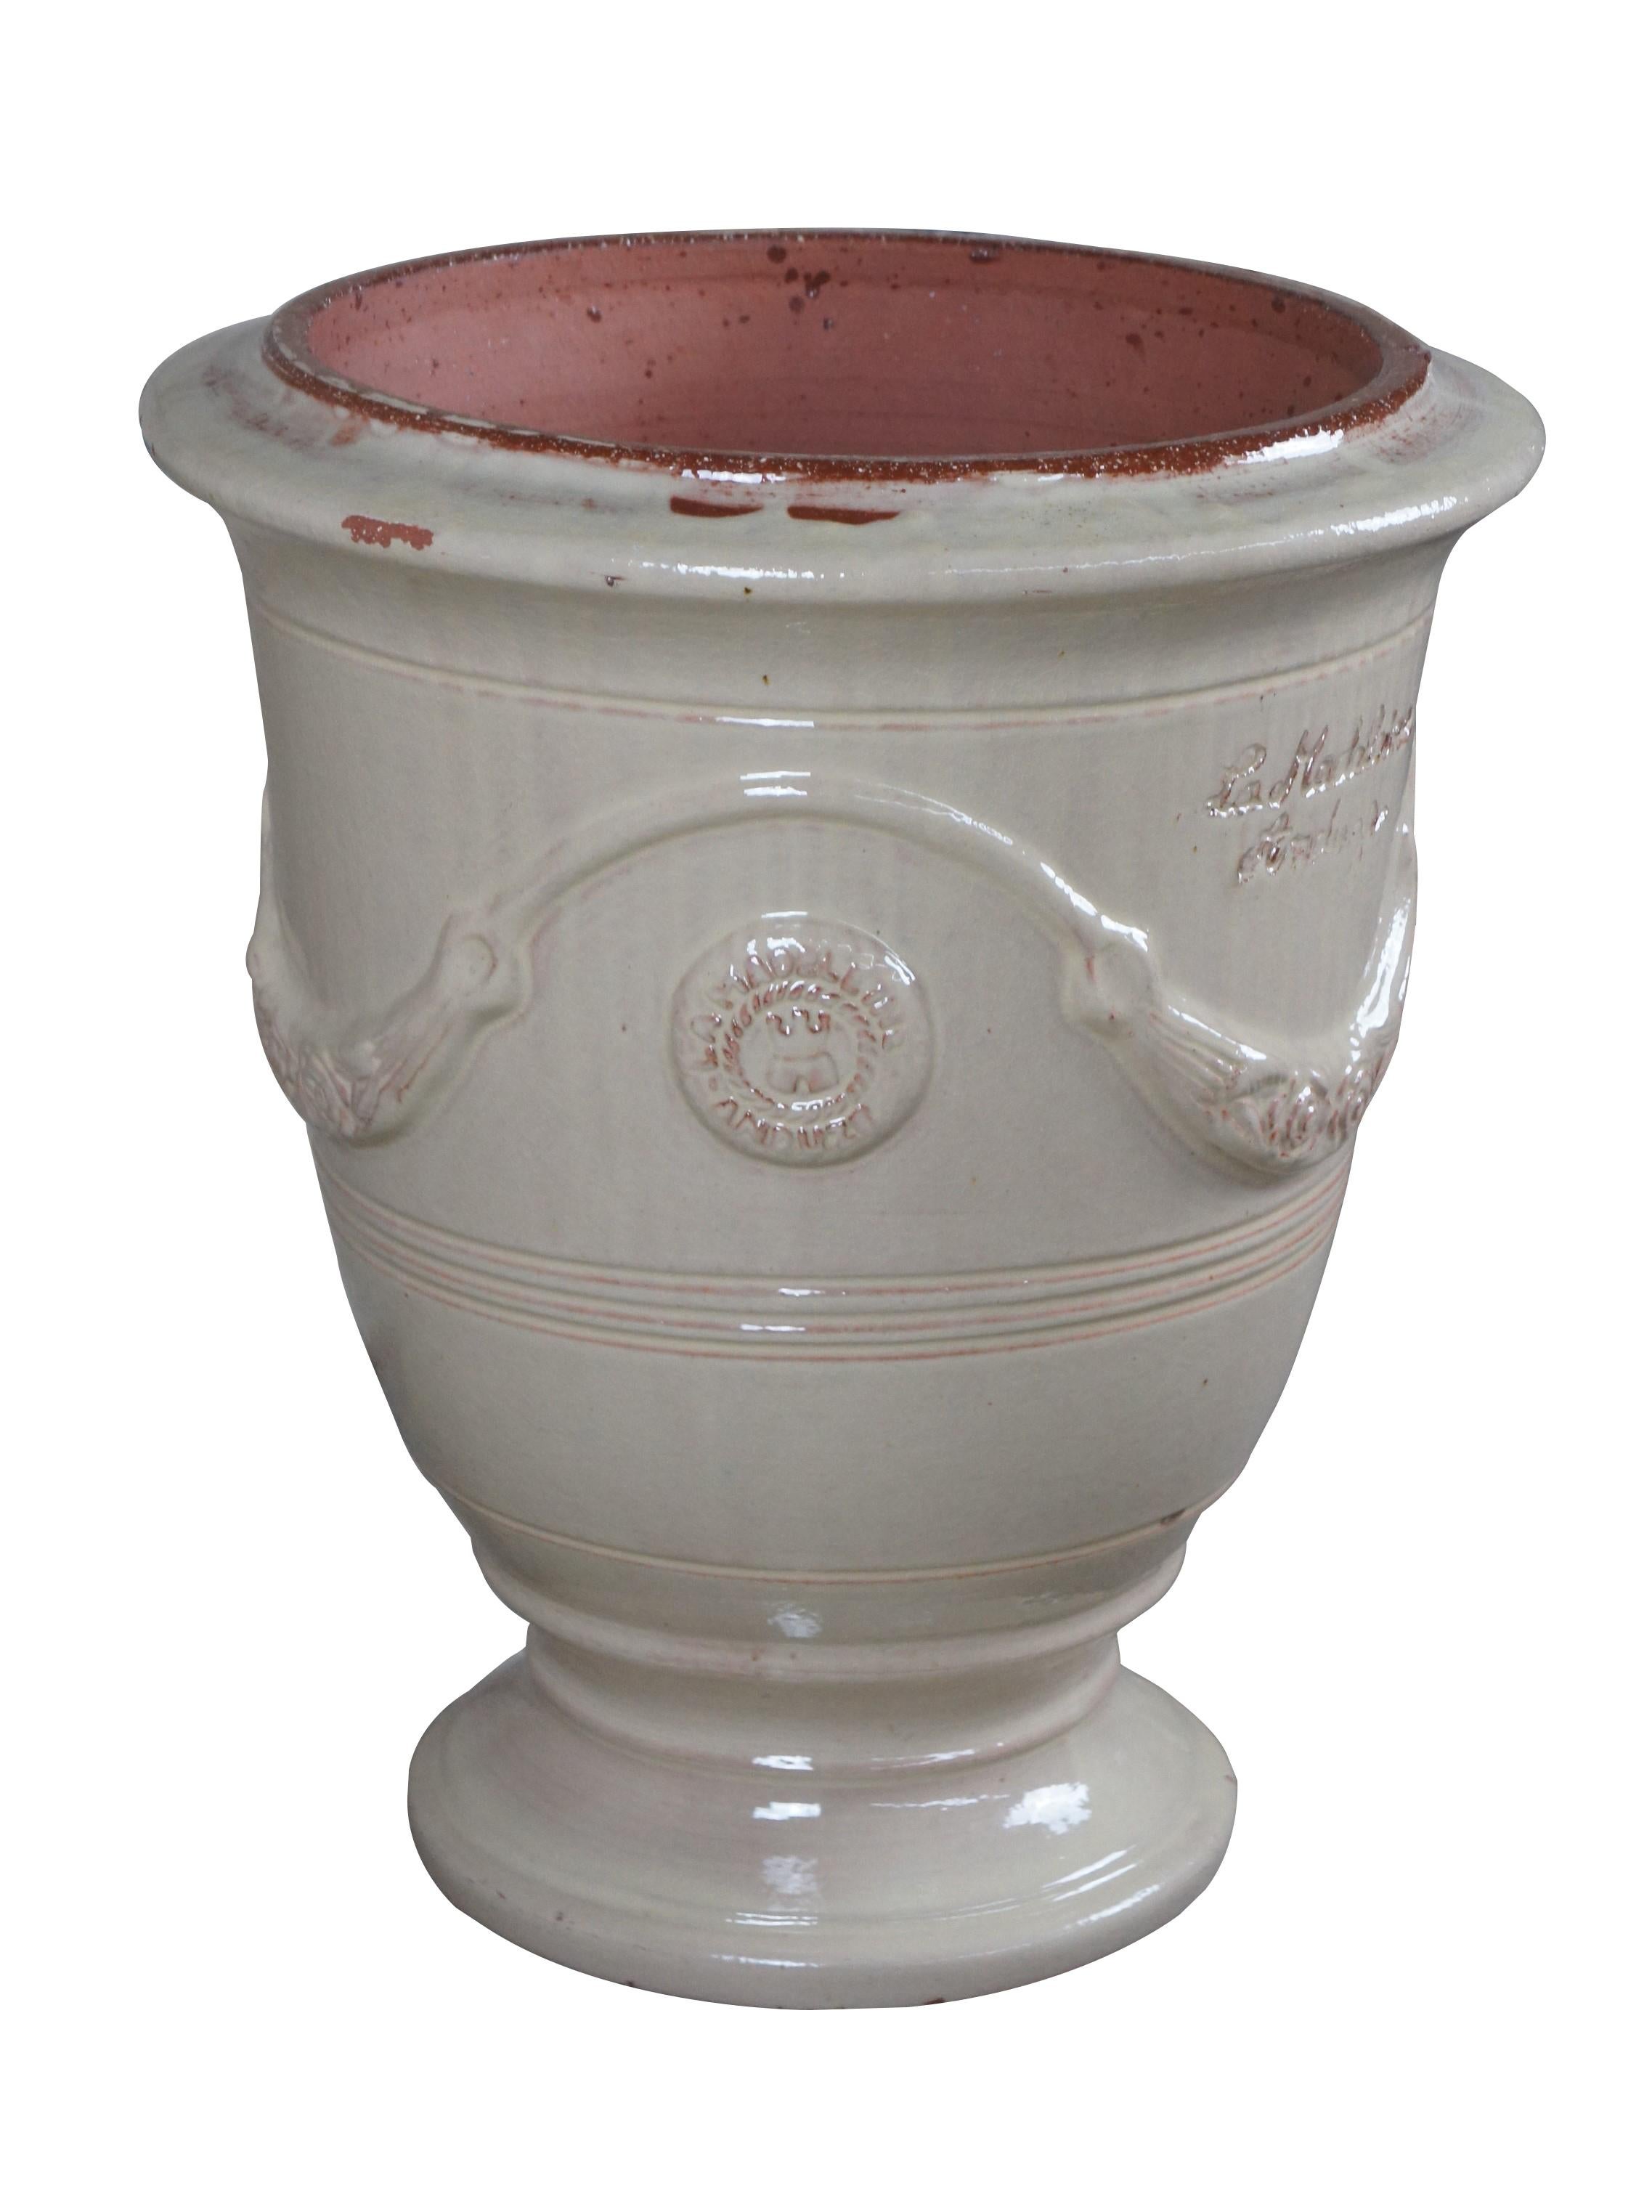 Das südfranzösische Anduze ist bekannt für seine Töpferkunst und blickt auf eine reiche Geschichte des Keramikhandwerks zurück. Die Töpferei der Madeleine, in der Ihre Kanne handgefertigt wurde, ist bekannt für die Herstellung hochwertiger Stücke